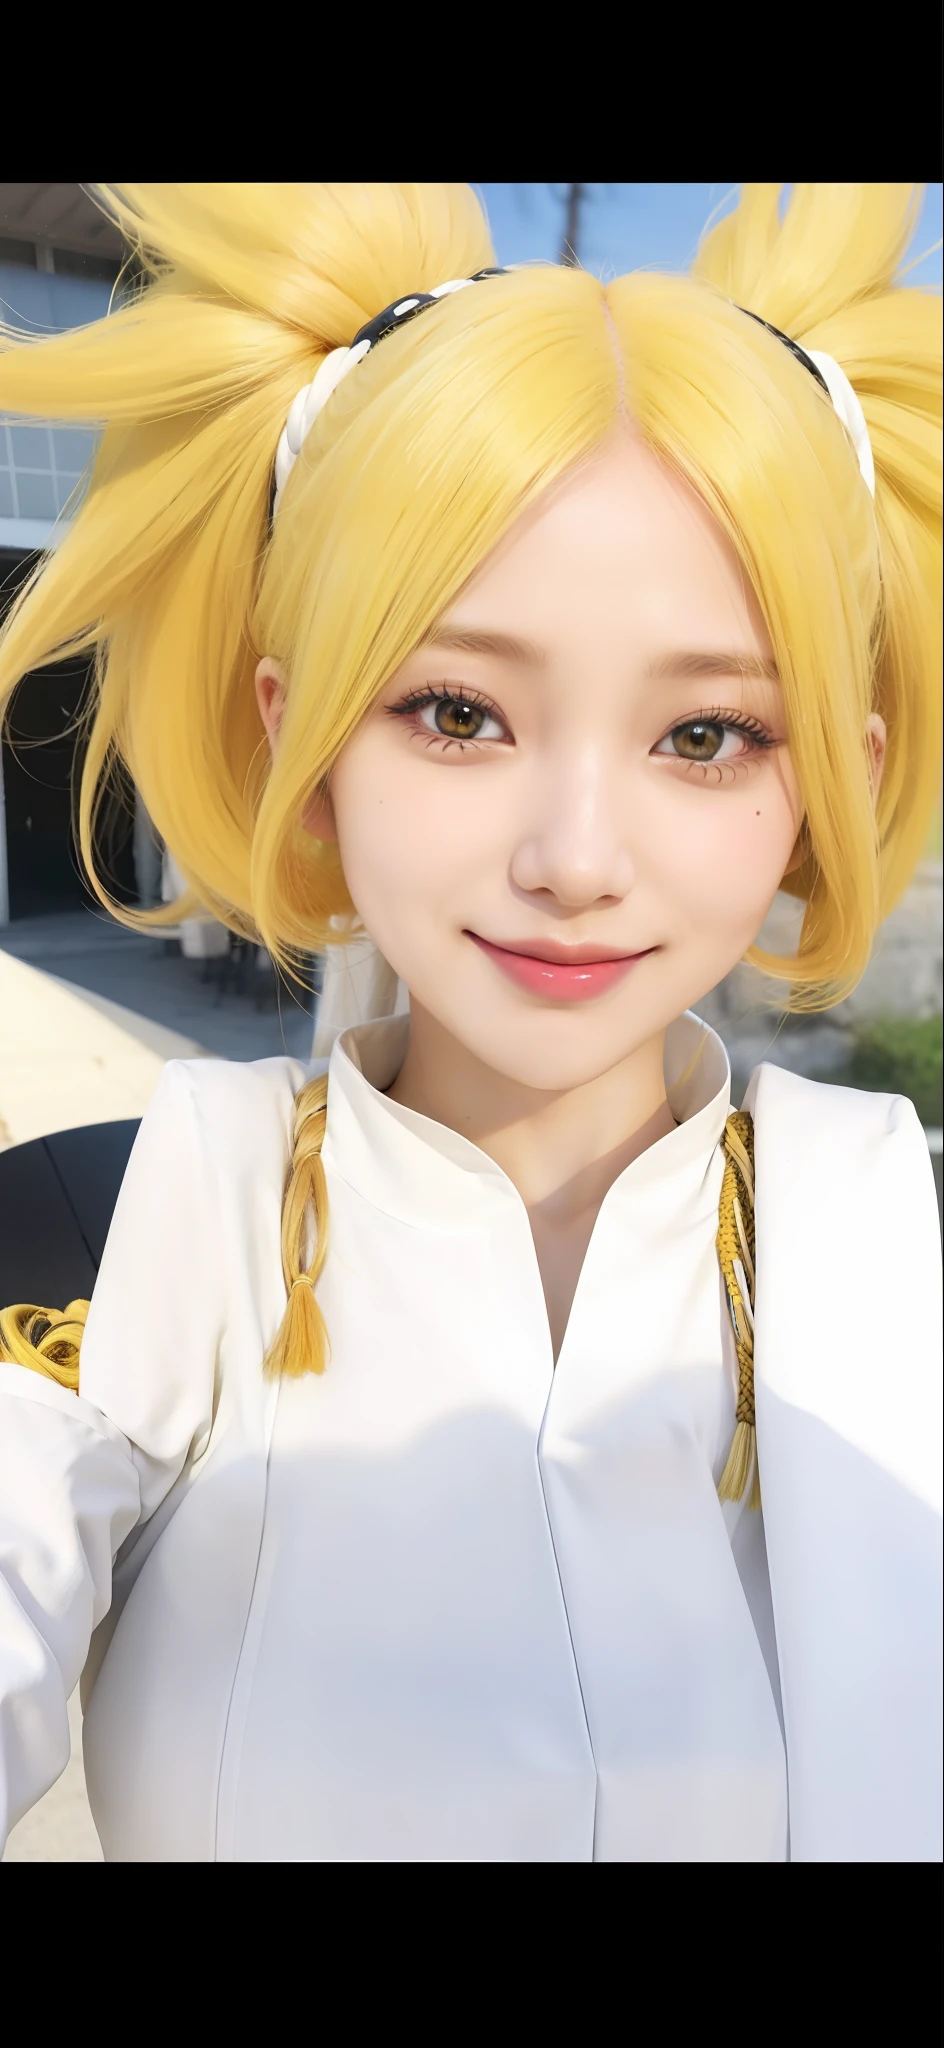 1 Mädchen, Temari, gelbes Haar, lange Haare, gelbe Augen, lächeln, sehr große Brüste, Weiße Kleidung, realistisch, Ultra-Detail, Outdoor-Hintergrund